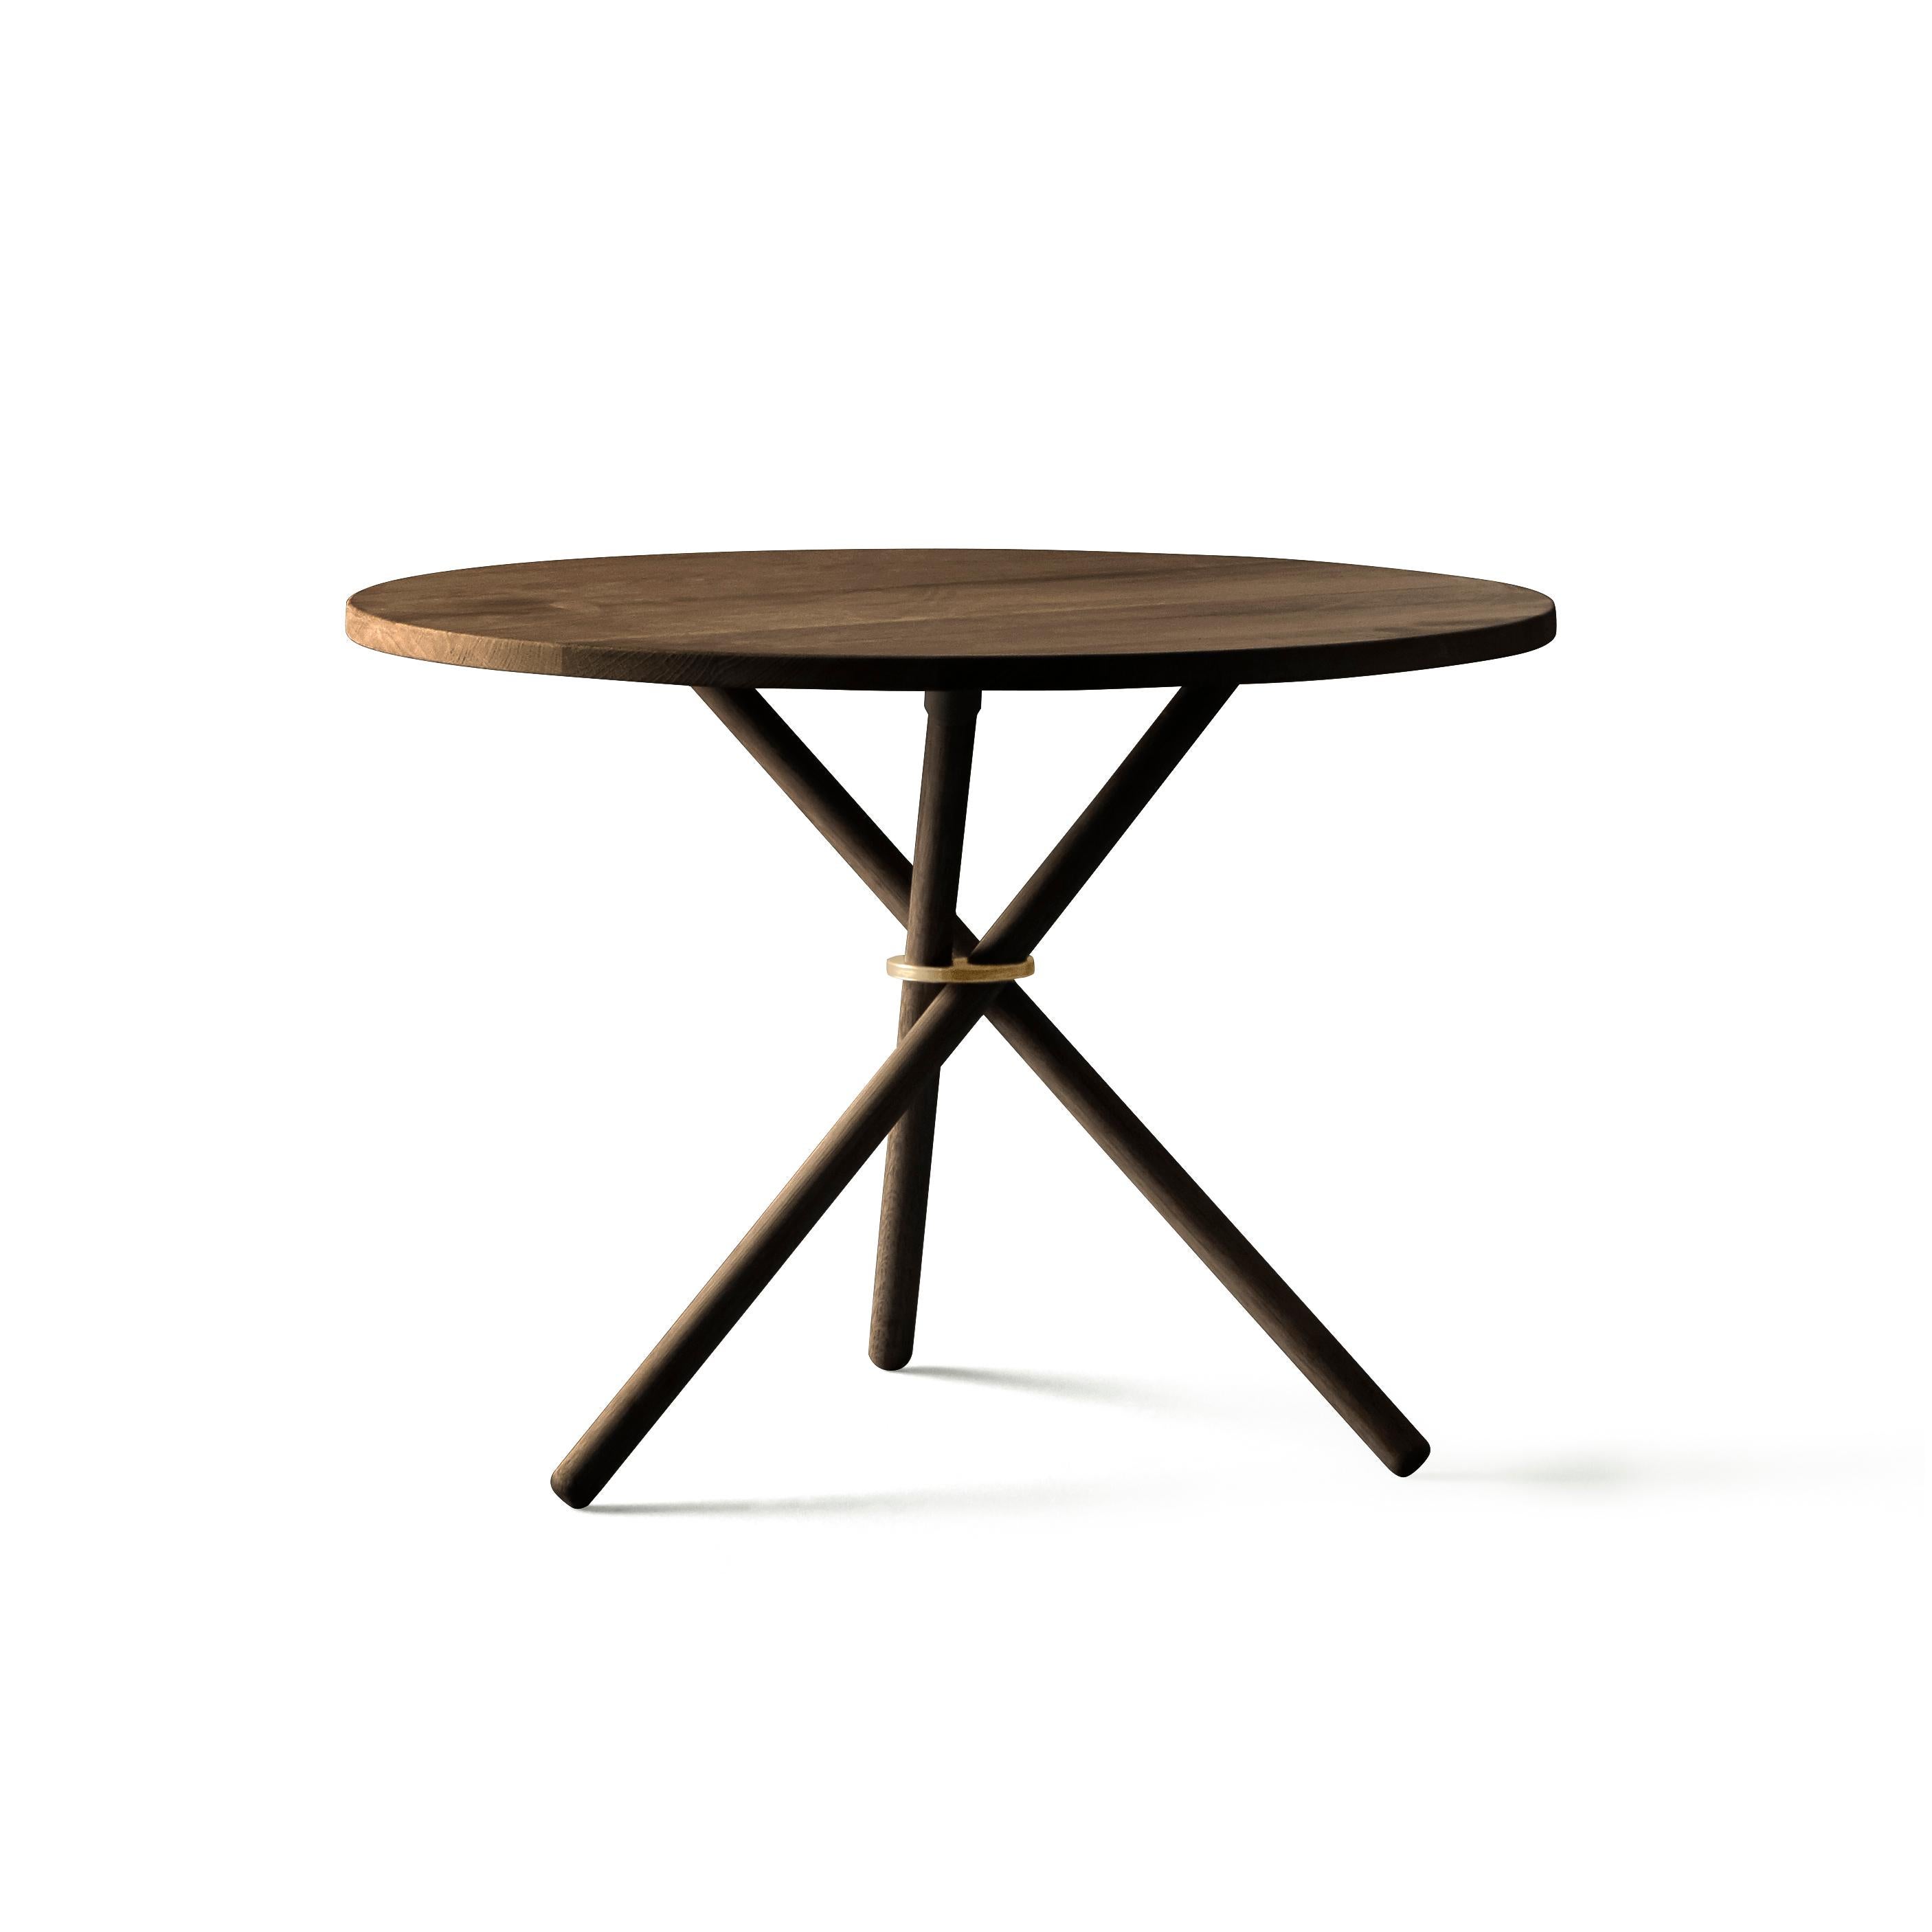 Daphne ist ein einfacher und stilvoller Couchtisch oder Beistelltisch. Der Tisch besteht aus drei Unterelementen: Der Montagering, die Holzbeine und die Tischplatte aus Beton, Eiche oder Birke. Die fast schwebende Tischplatte und die skulpturale